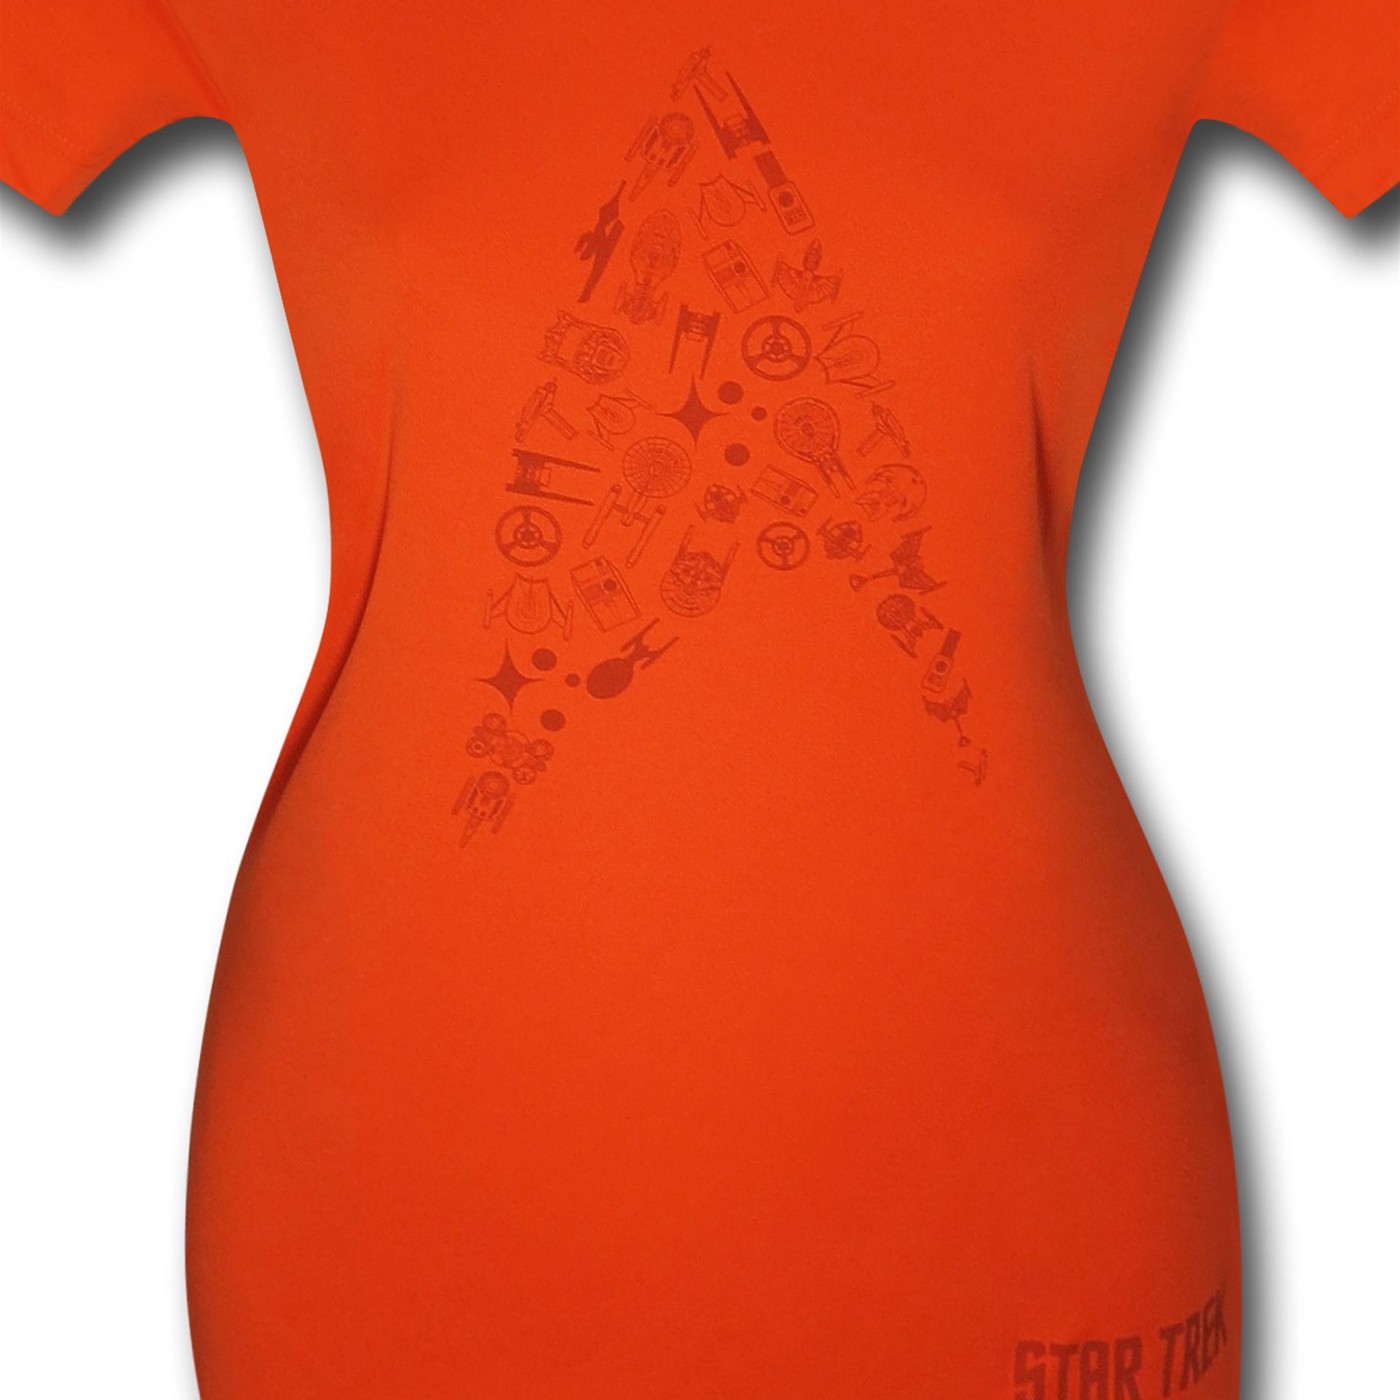 Star Trek Insignia Women's Orange Running Shirt